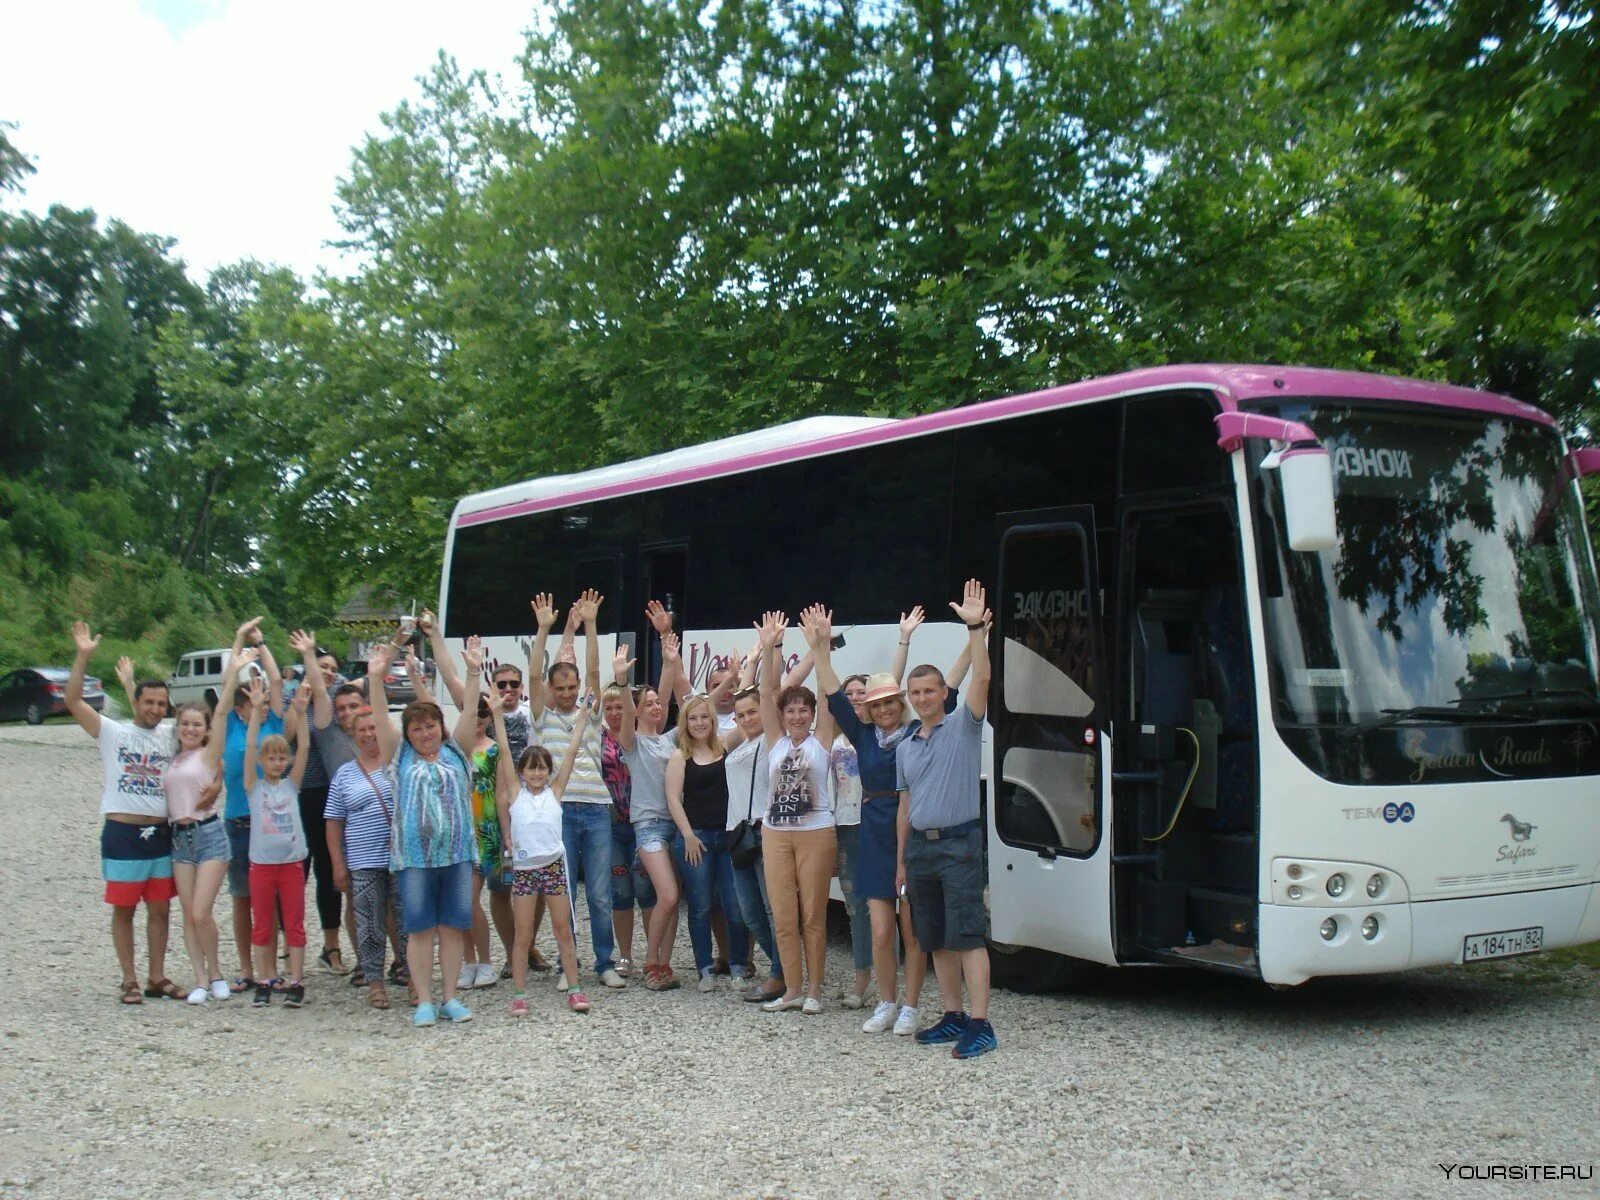 Автобусные туры 1 день. Экскурсия на автобусе. Автобусные туры. Экскурсионные автобусы в Абхазии. Туристические автобусы в Абхазии.